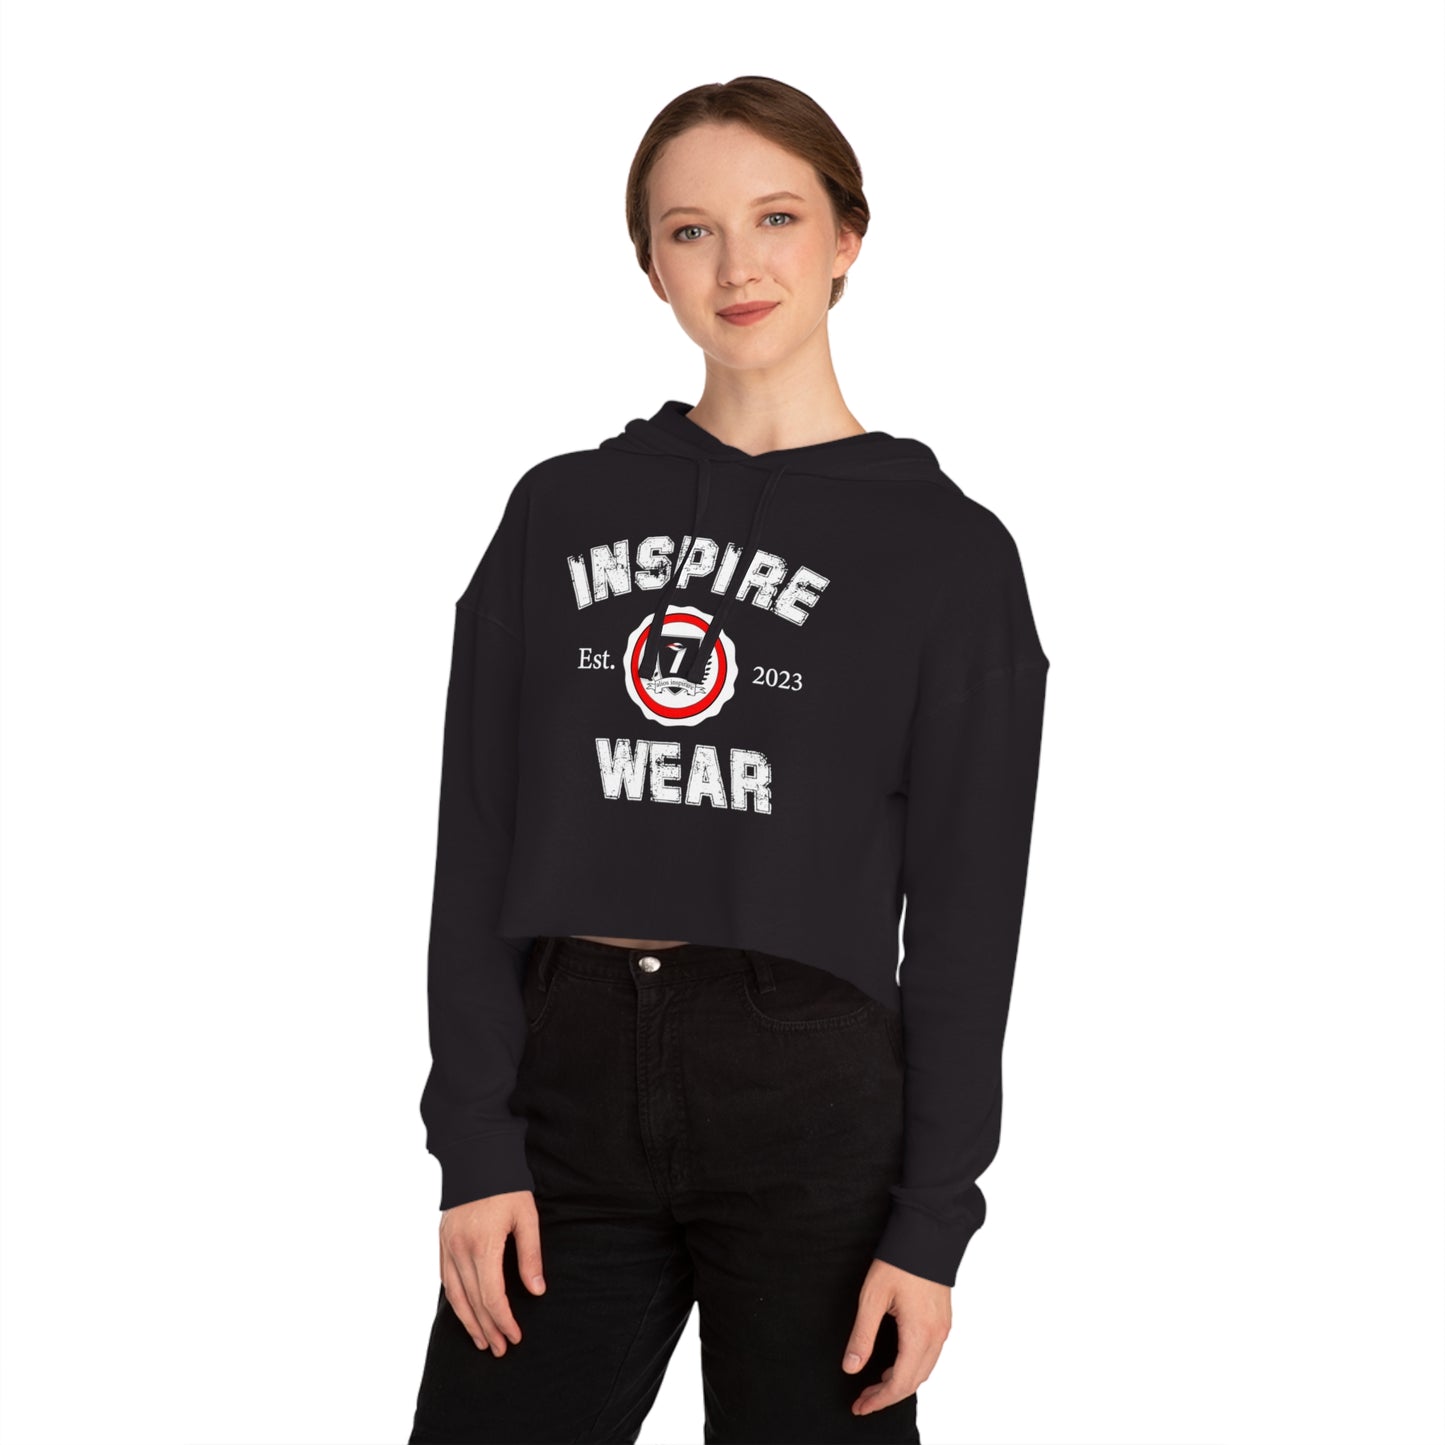 Inspire Wear Women’s Cropped Hooded Sweatshirt